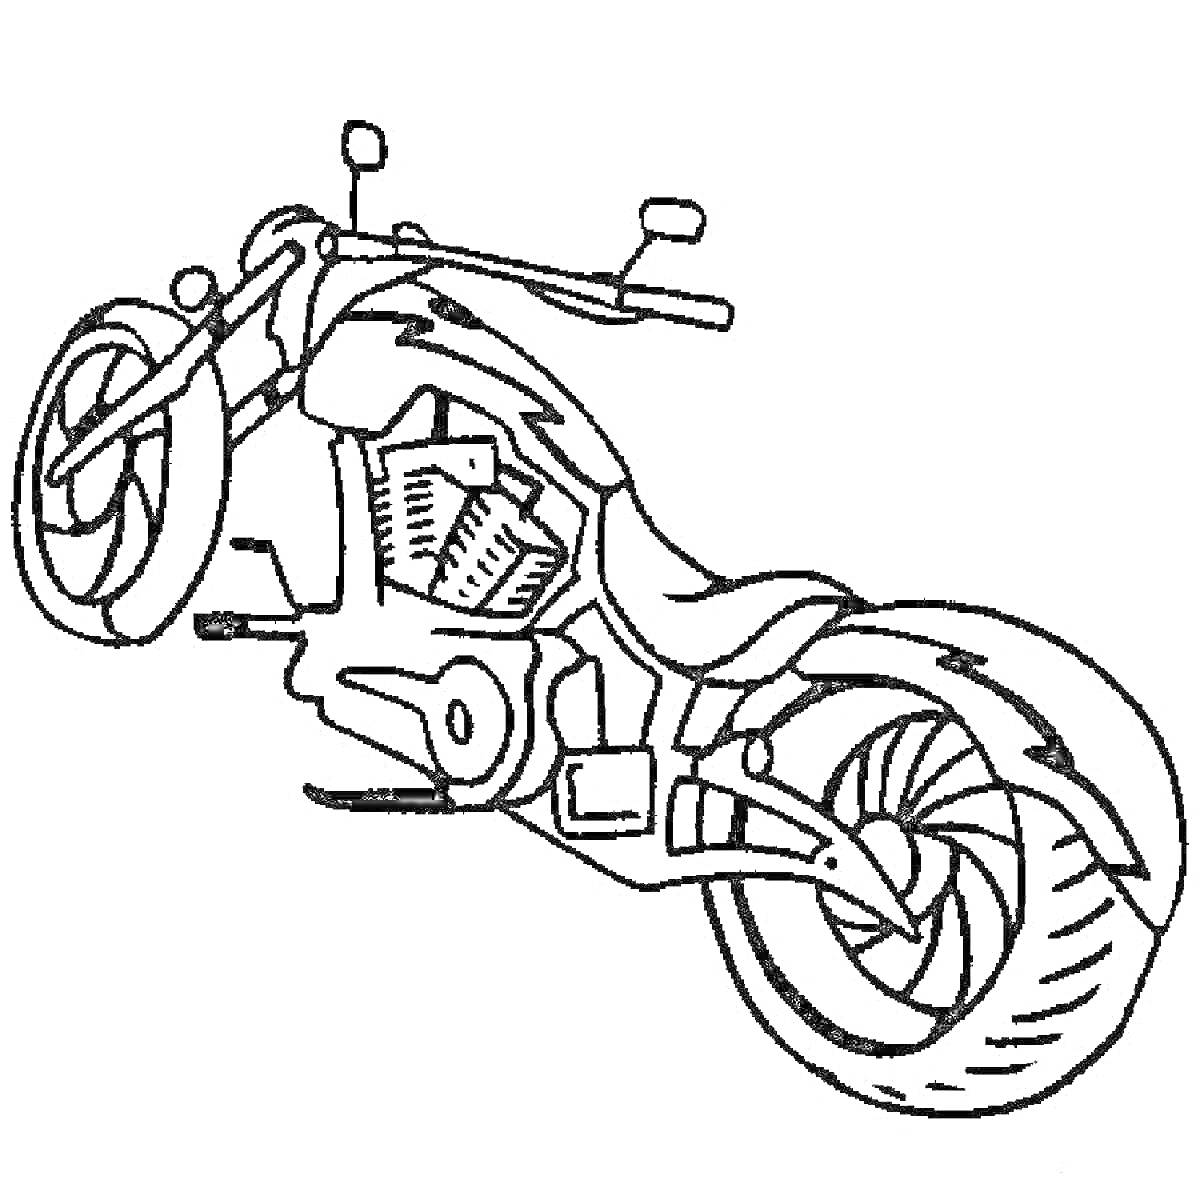 Раскраска Раскраска гоночного мотоцикла с зеркалами, фарами, двигателем, колёсами и выхлопной трубой